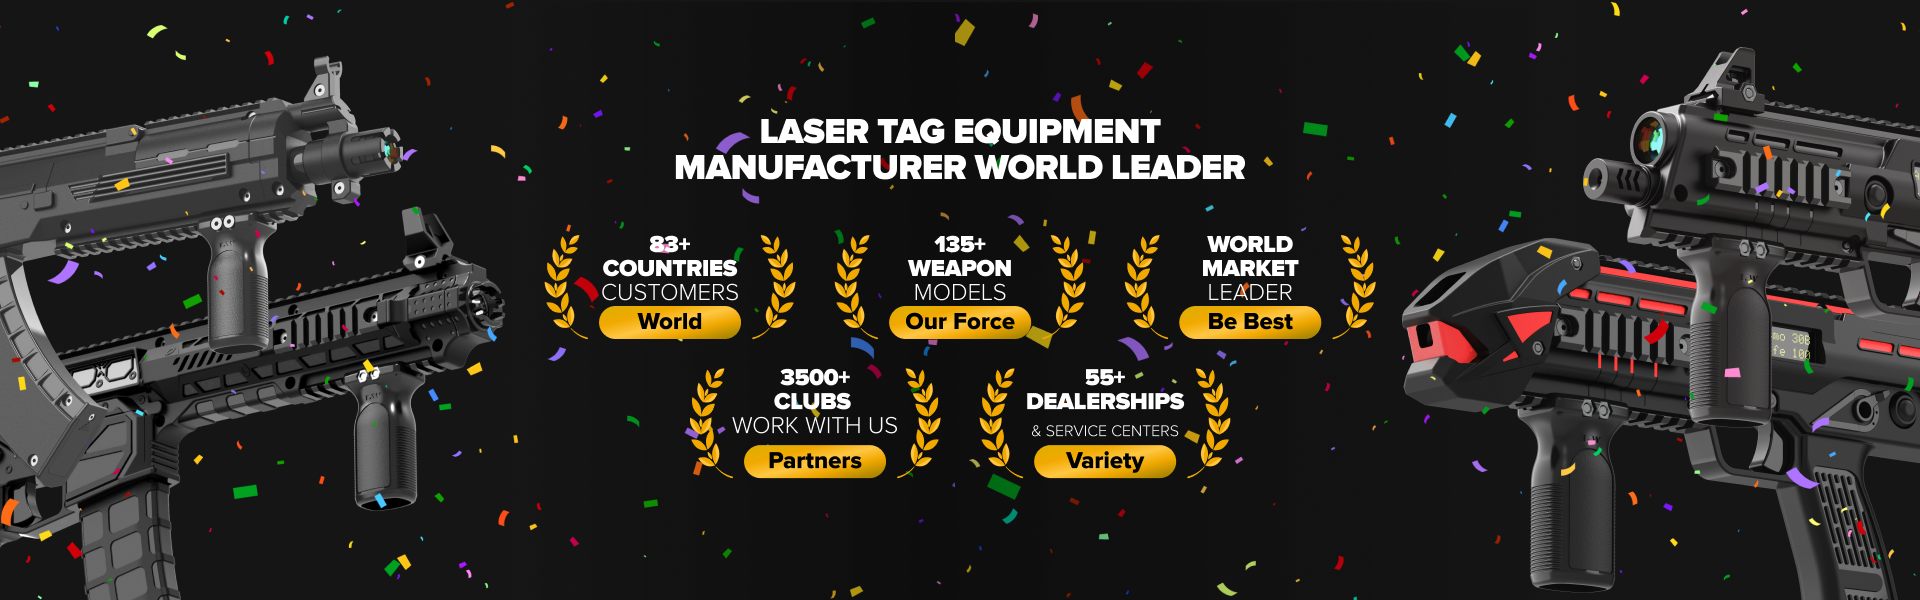 Laser tag equipment manufacturer